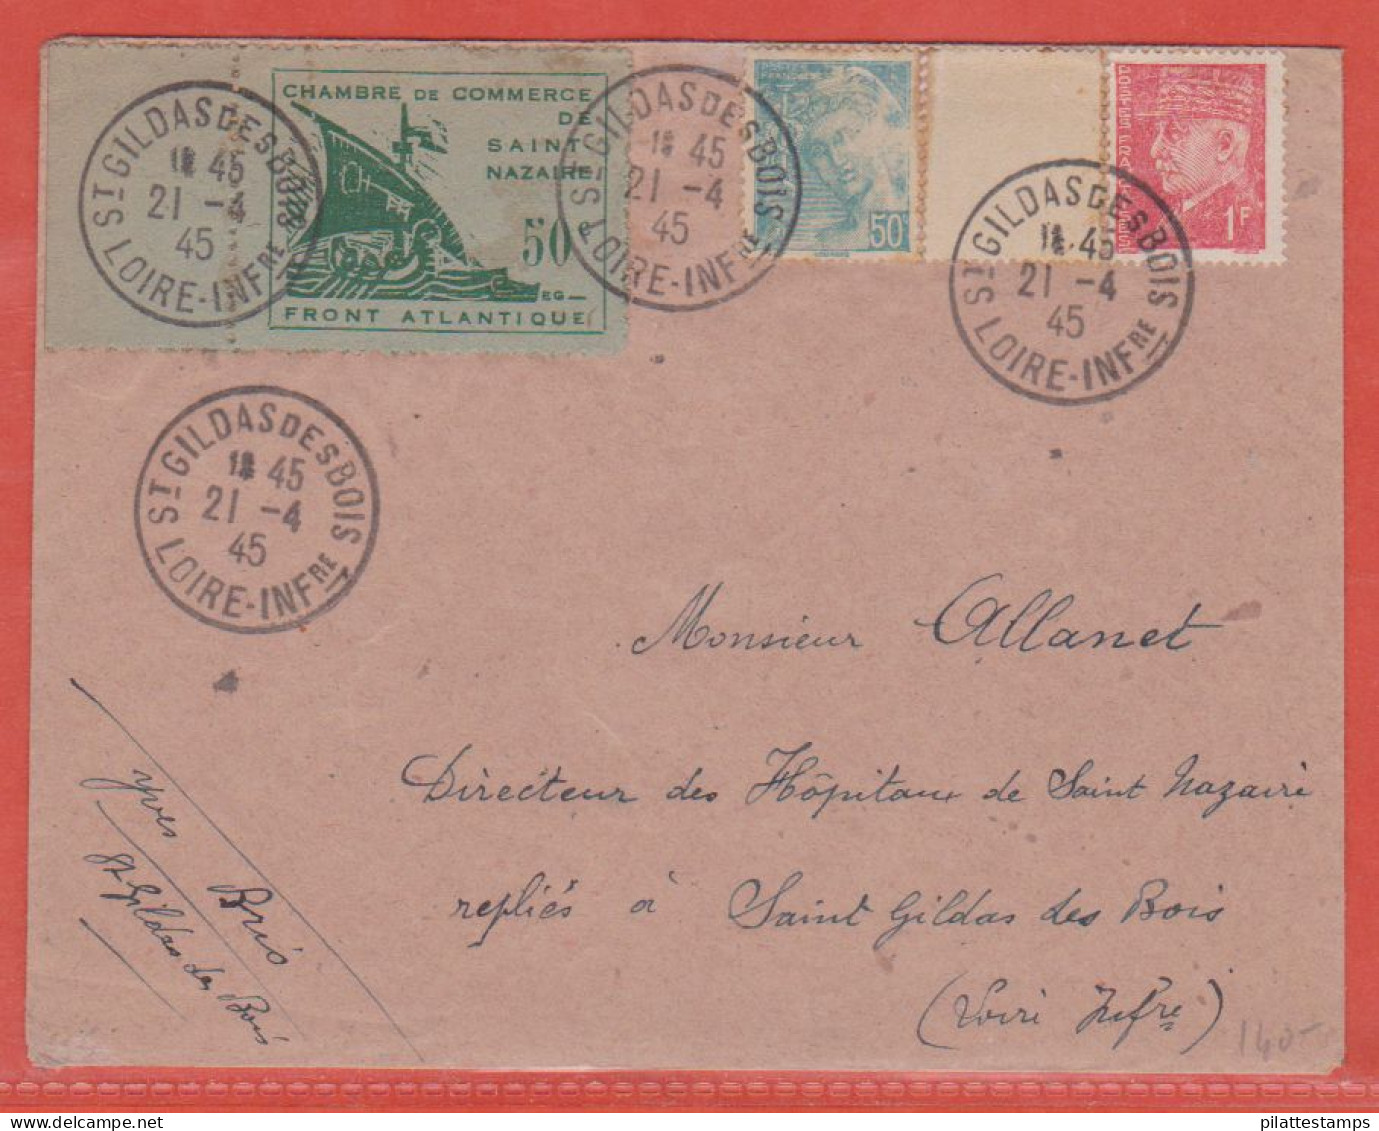 FRANCE GUERRE N°8 SAINT NAZAIRE SUR LETTRE DE 1945 DE SAINT GILDAS DES BOIS - War Stamps